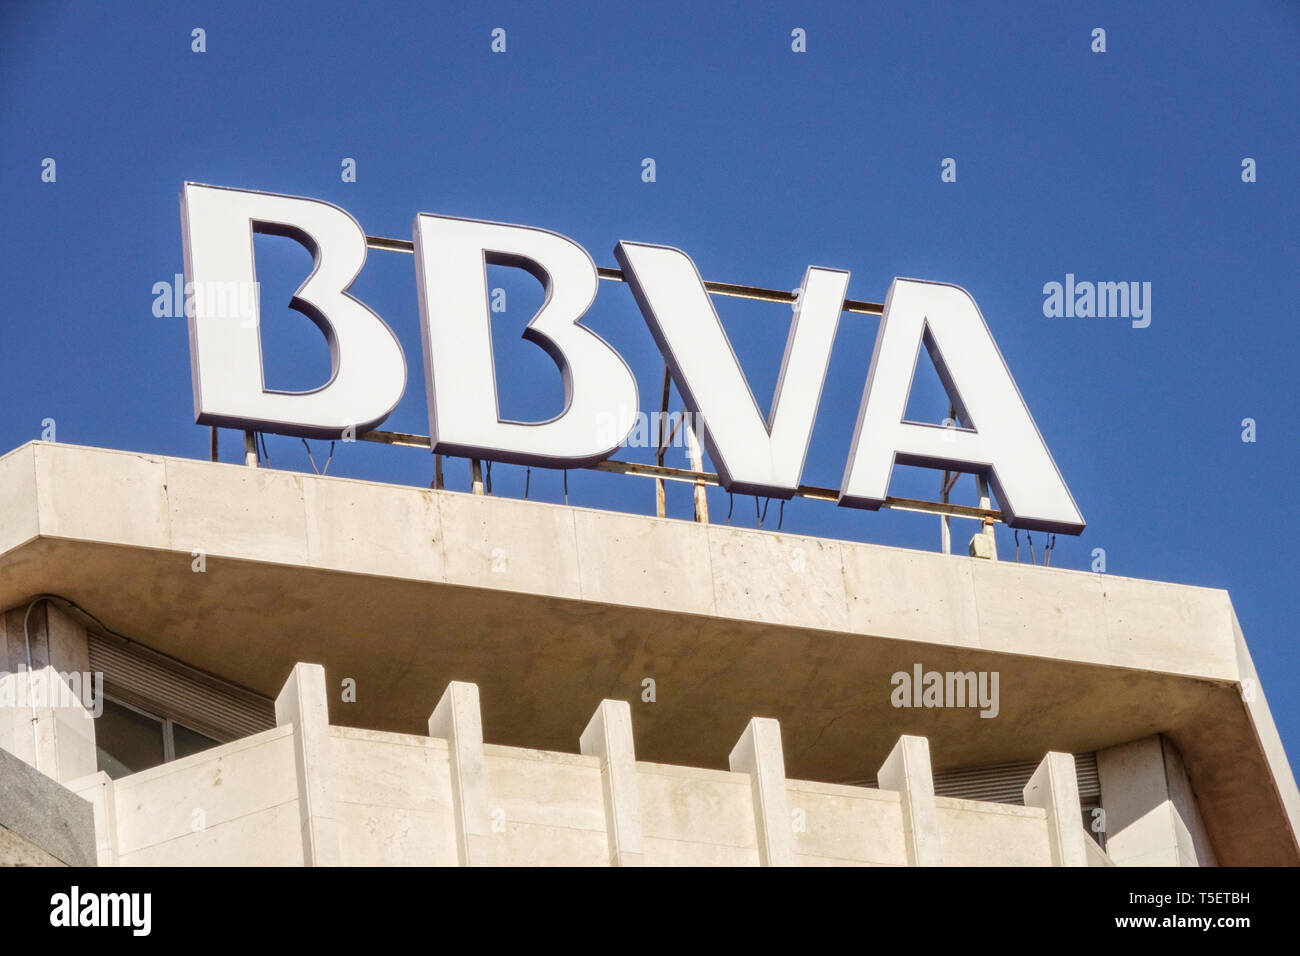 Bbva Bank In Valencia Spanien Stockfotografie Alamy